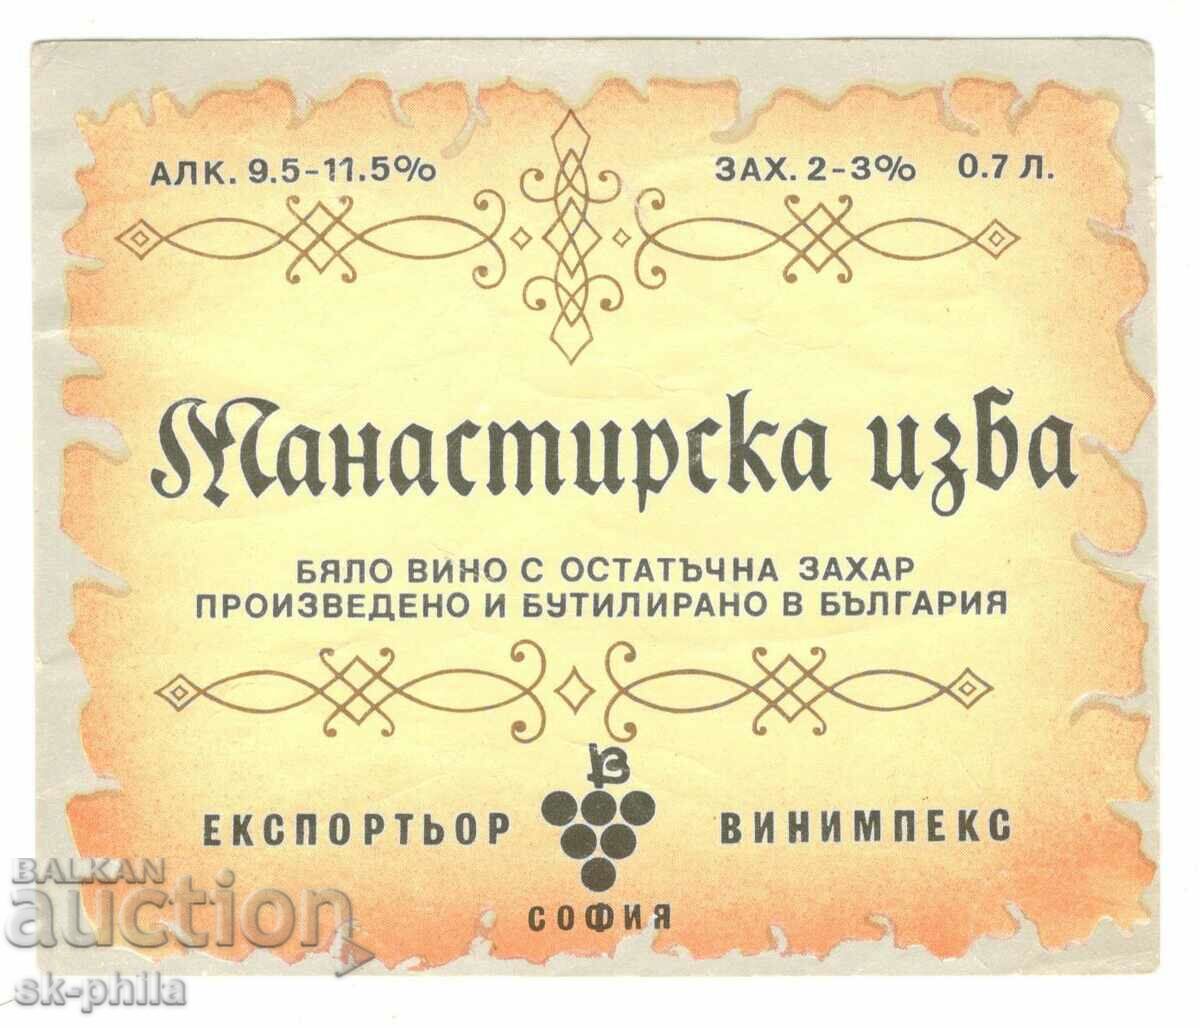 Етикет от вино "Манастирска изба"